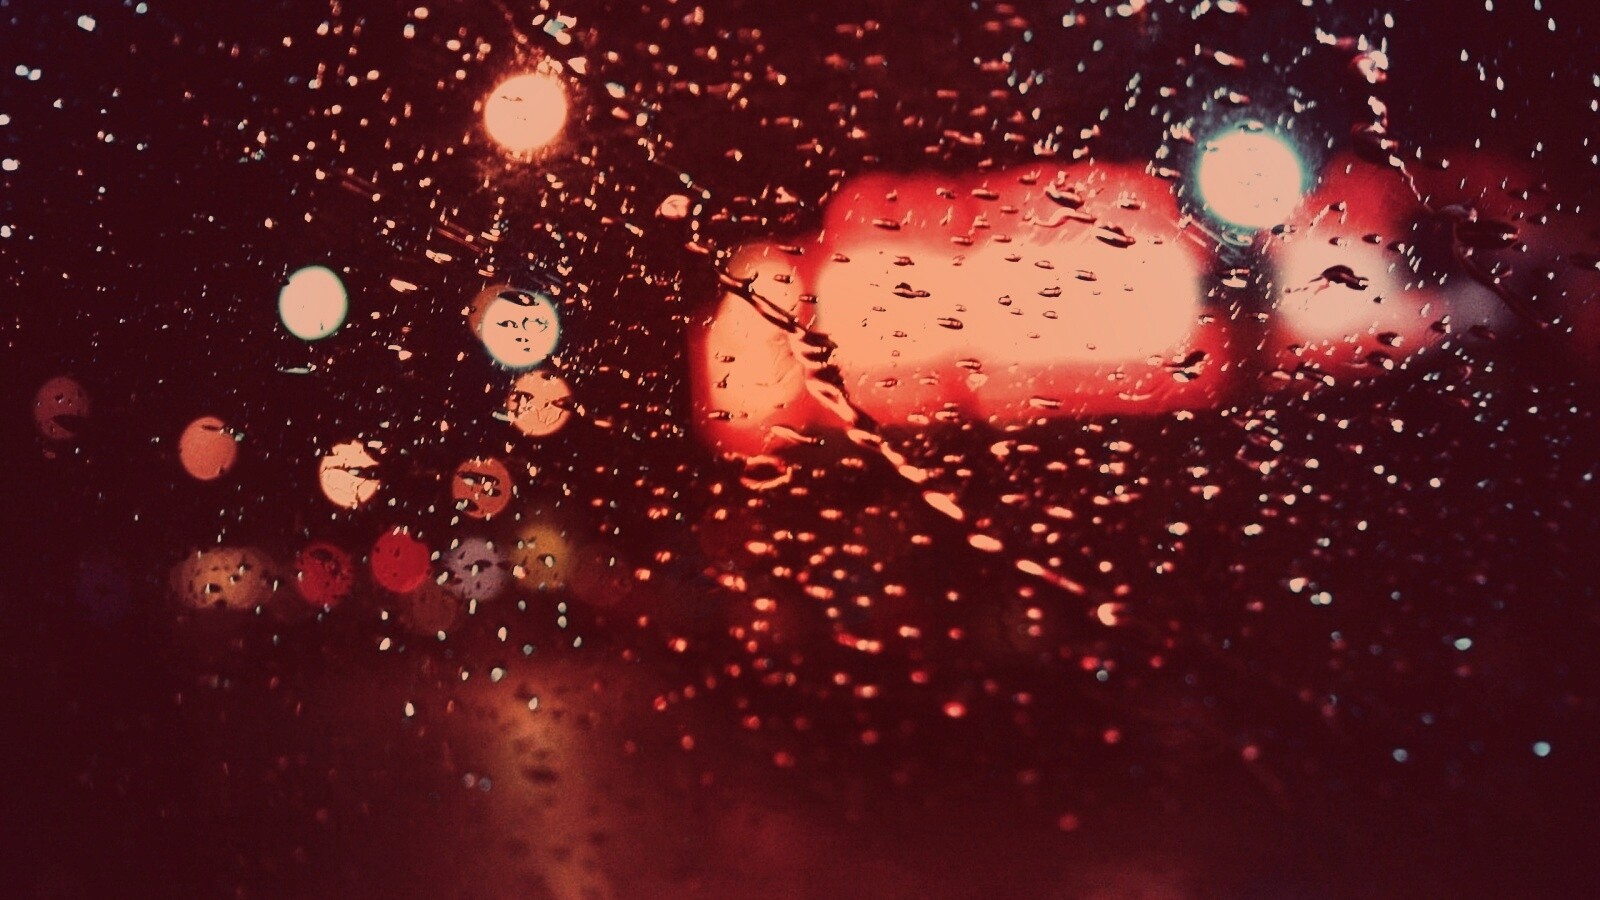 Дождь на стекле обои